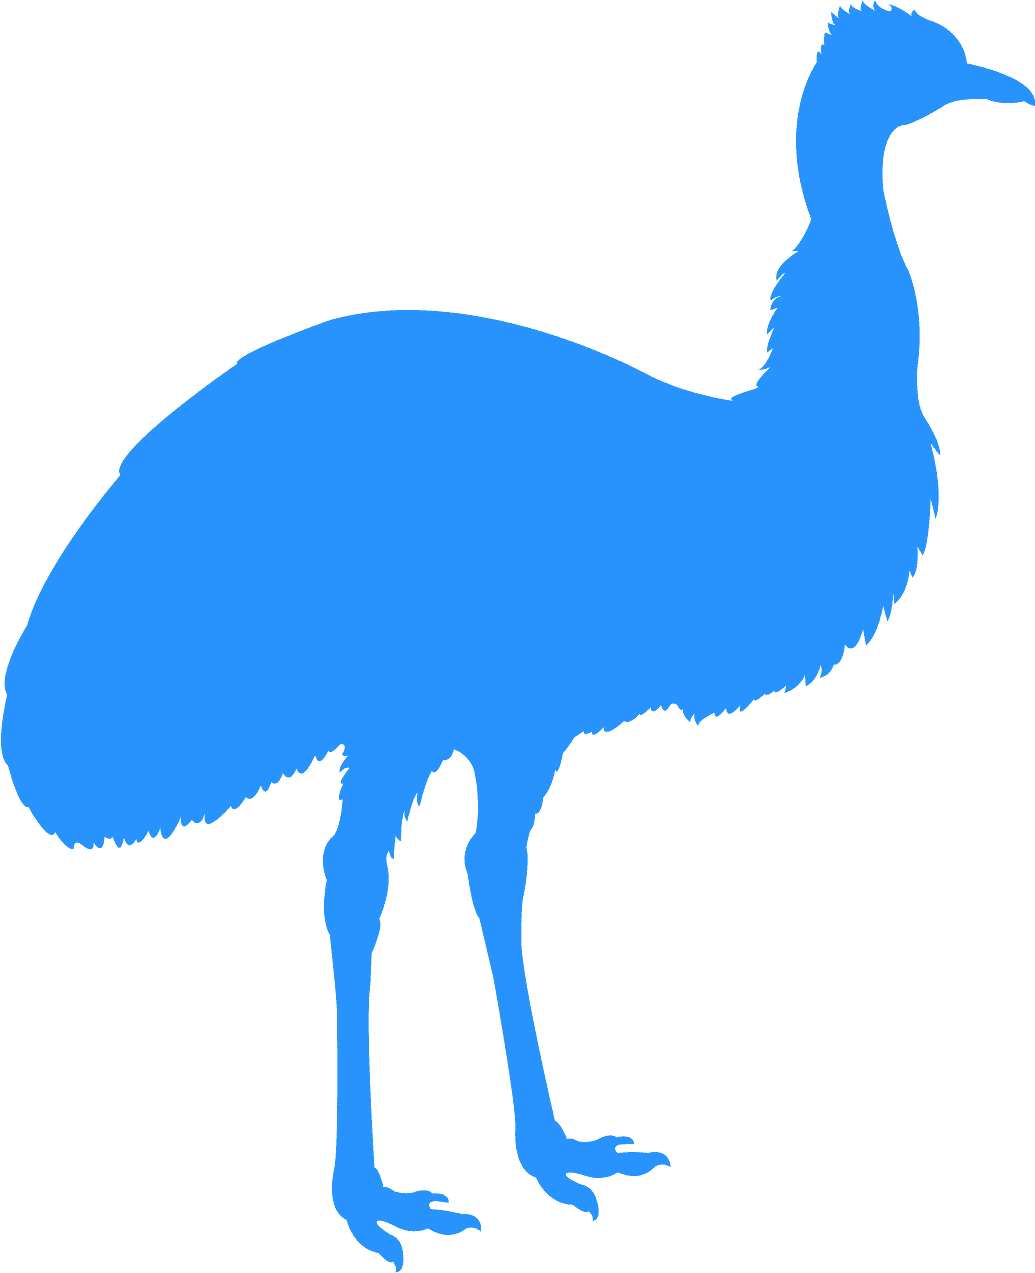 A Blue Bird With Long Legs